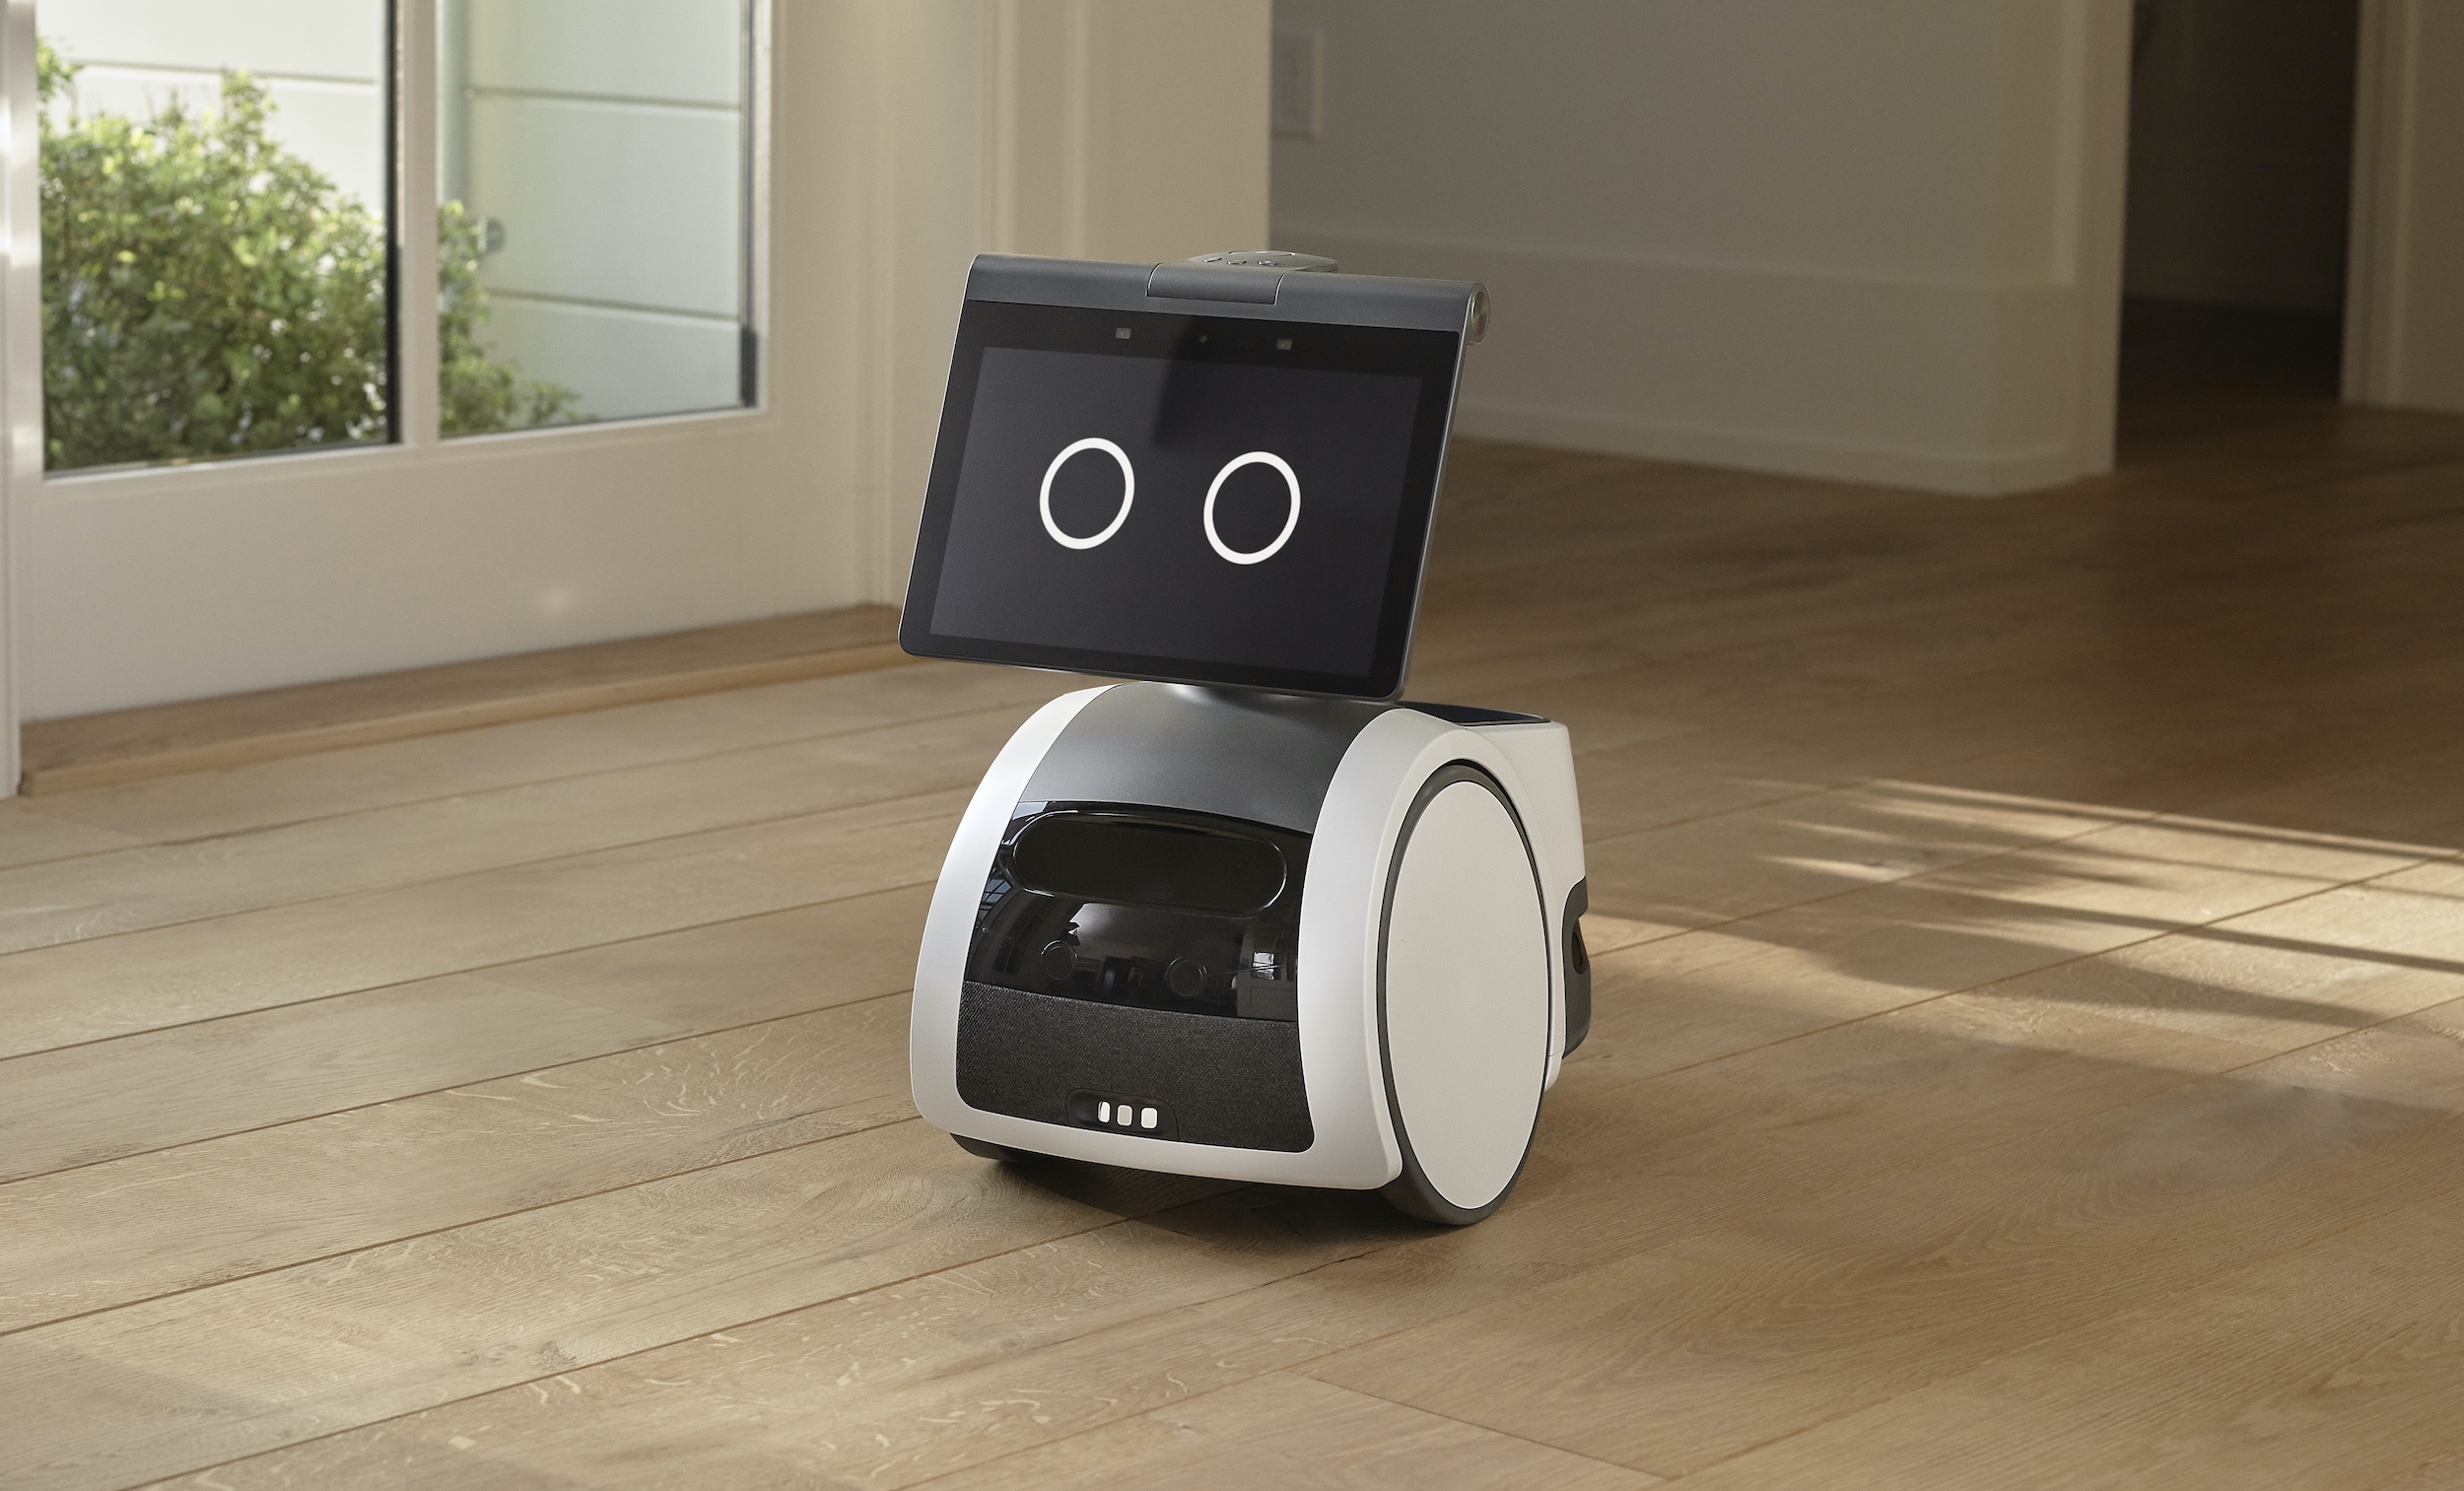 Los robots asistentes prometen casas limpias y seguras, ¿pero a qué precio? 1